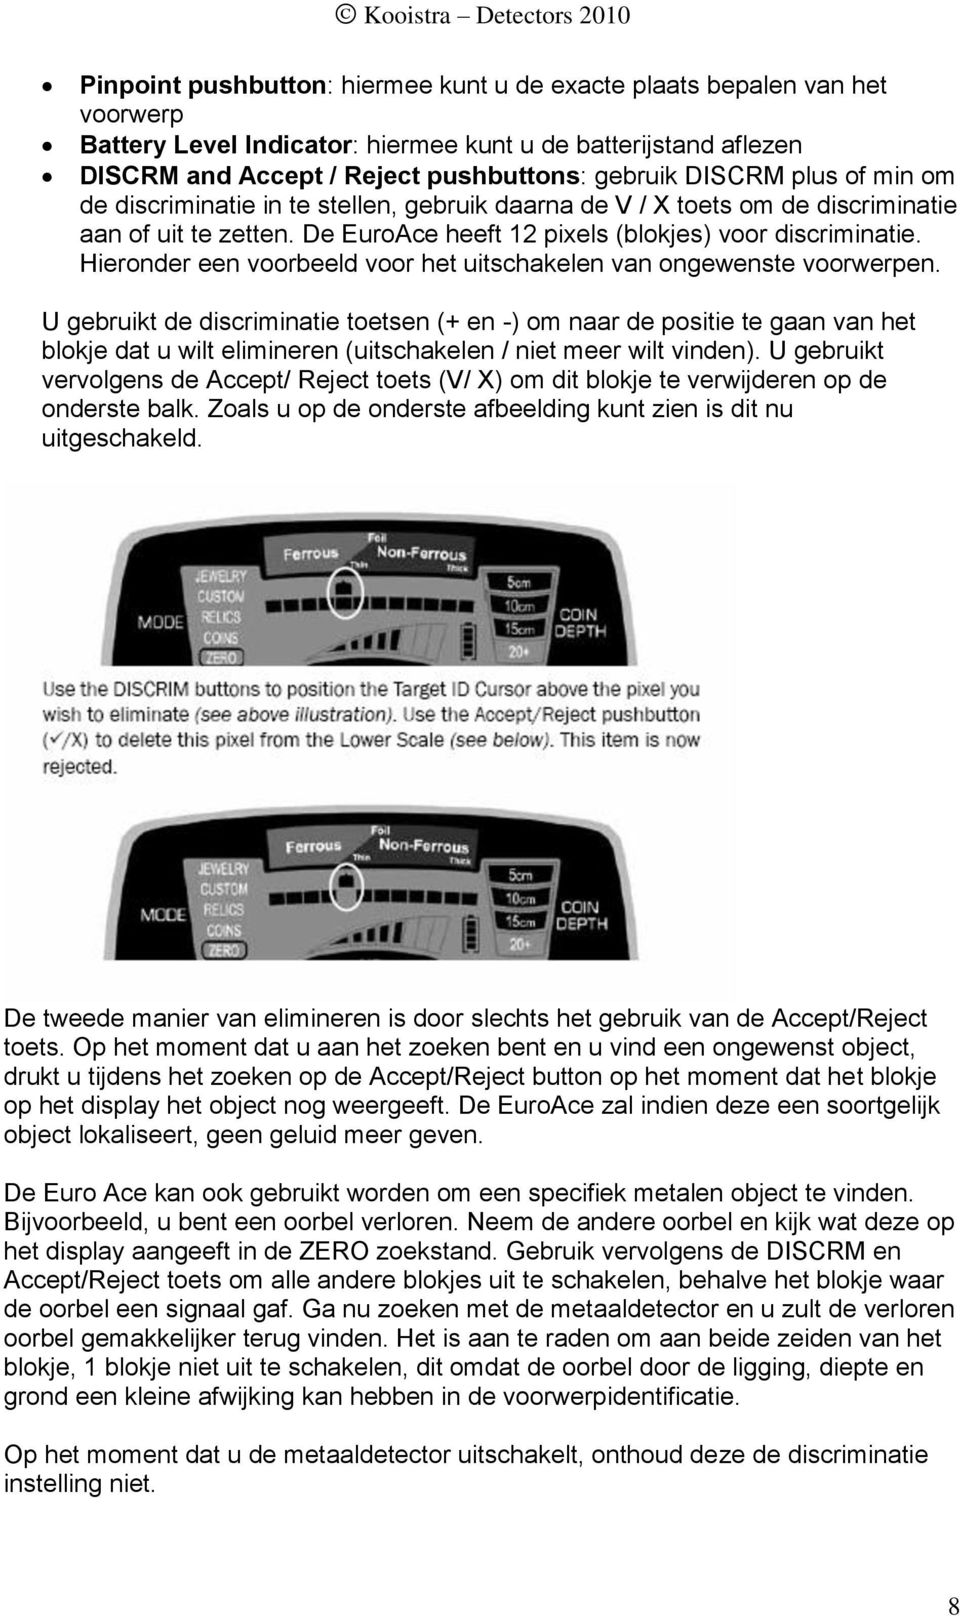 De EuroAce heeft 12 pixels (blokjes) voor discriminatie. Hieronder een voorbeeld voor het uitschakelen van ongewenste voorwerpen.